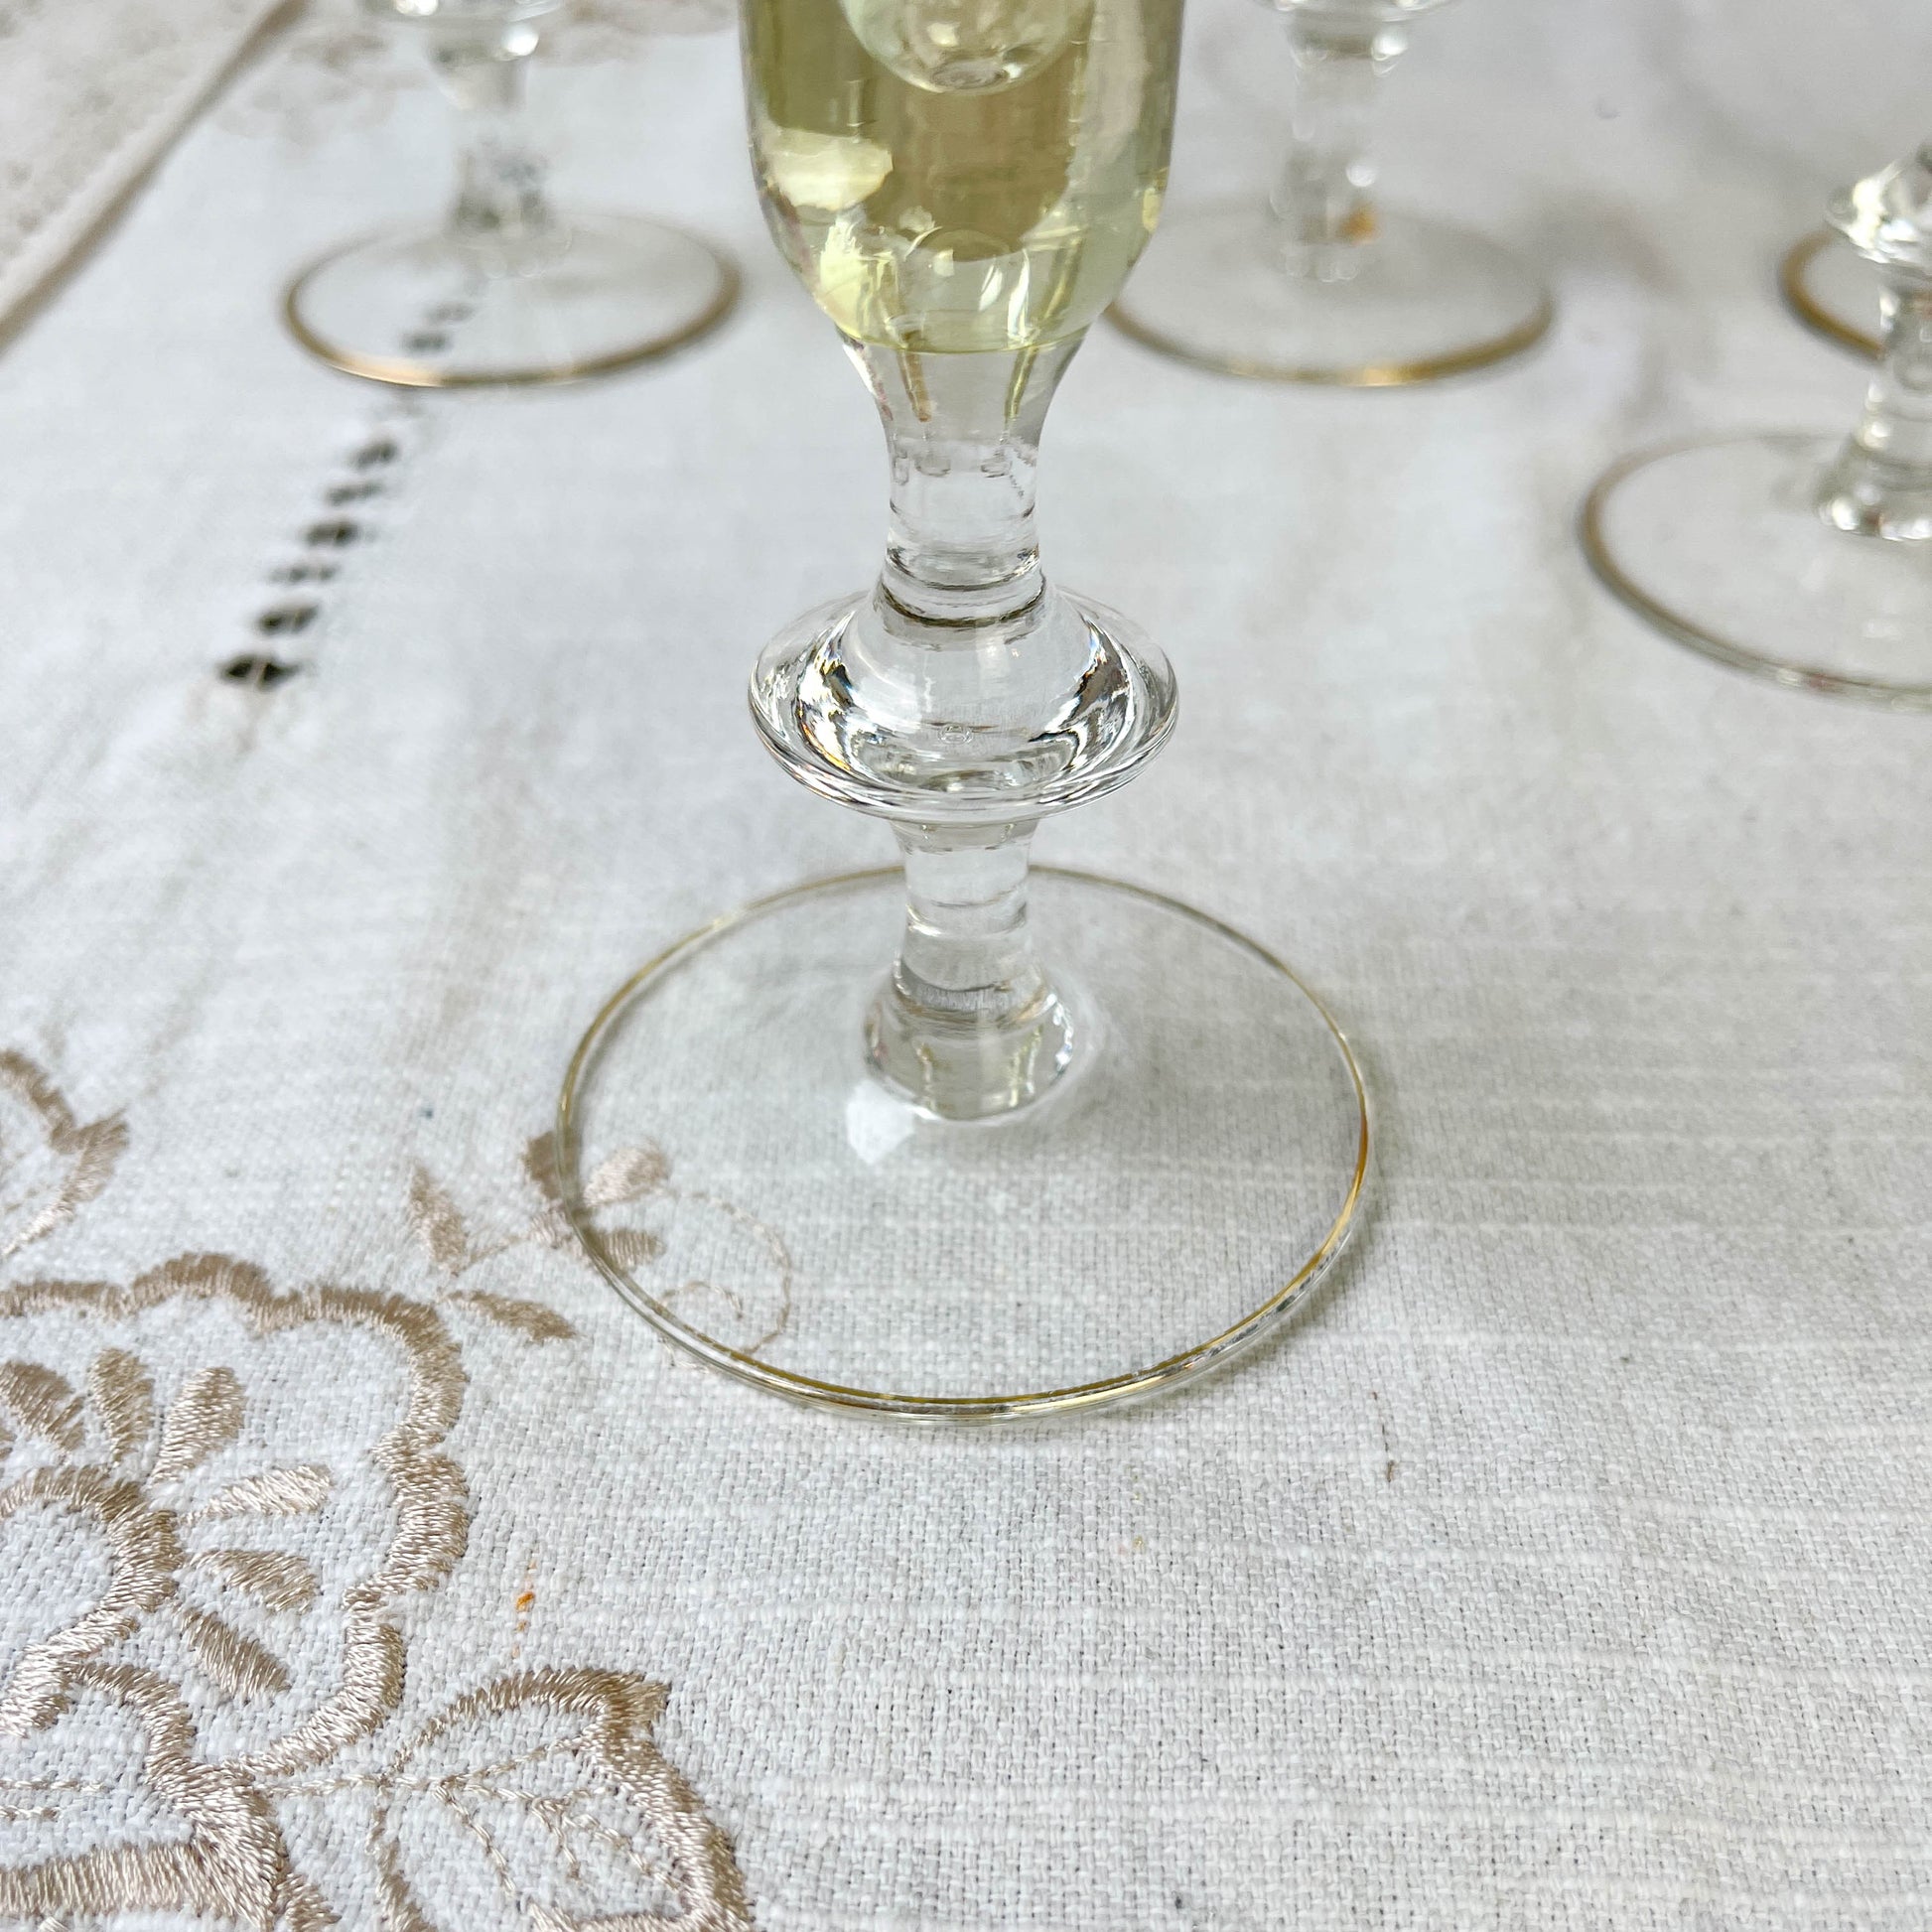 10 Flûtes à champagne cristal ciselé coloré vintage